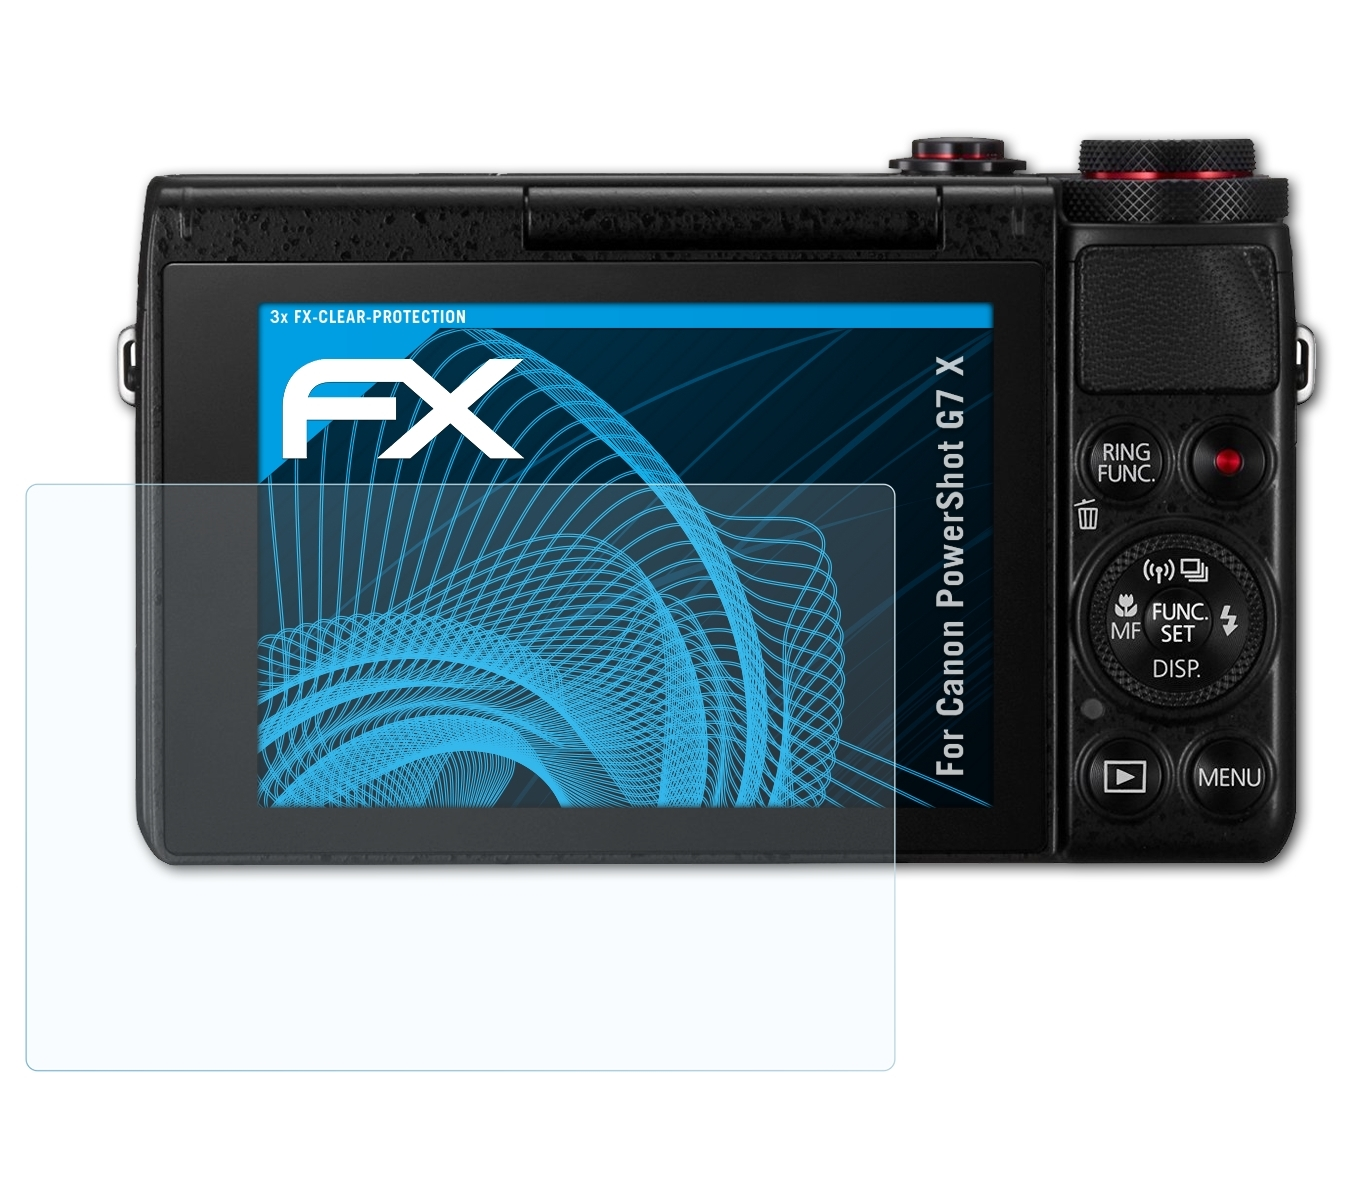 ATFOLIX 3x PowerShot G7 Canon Displayschutz(für FX-Clear X)